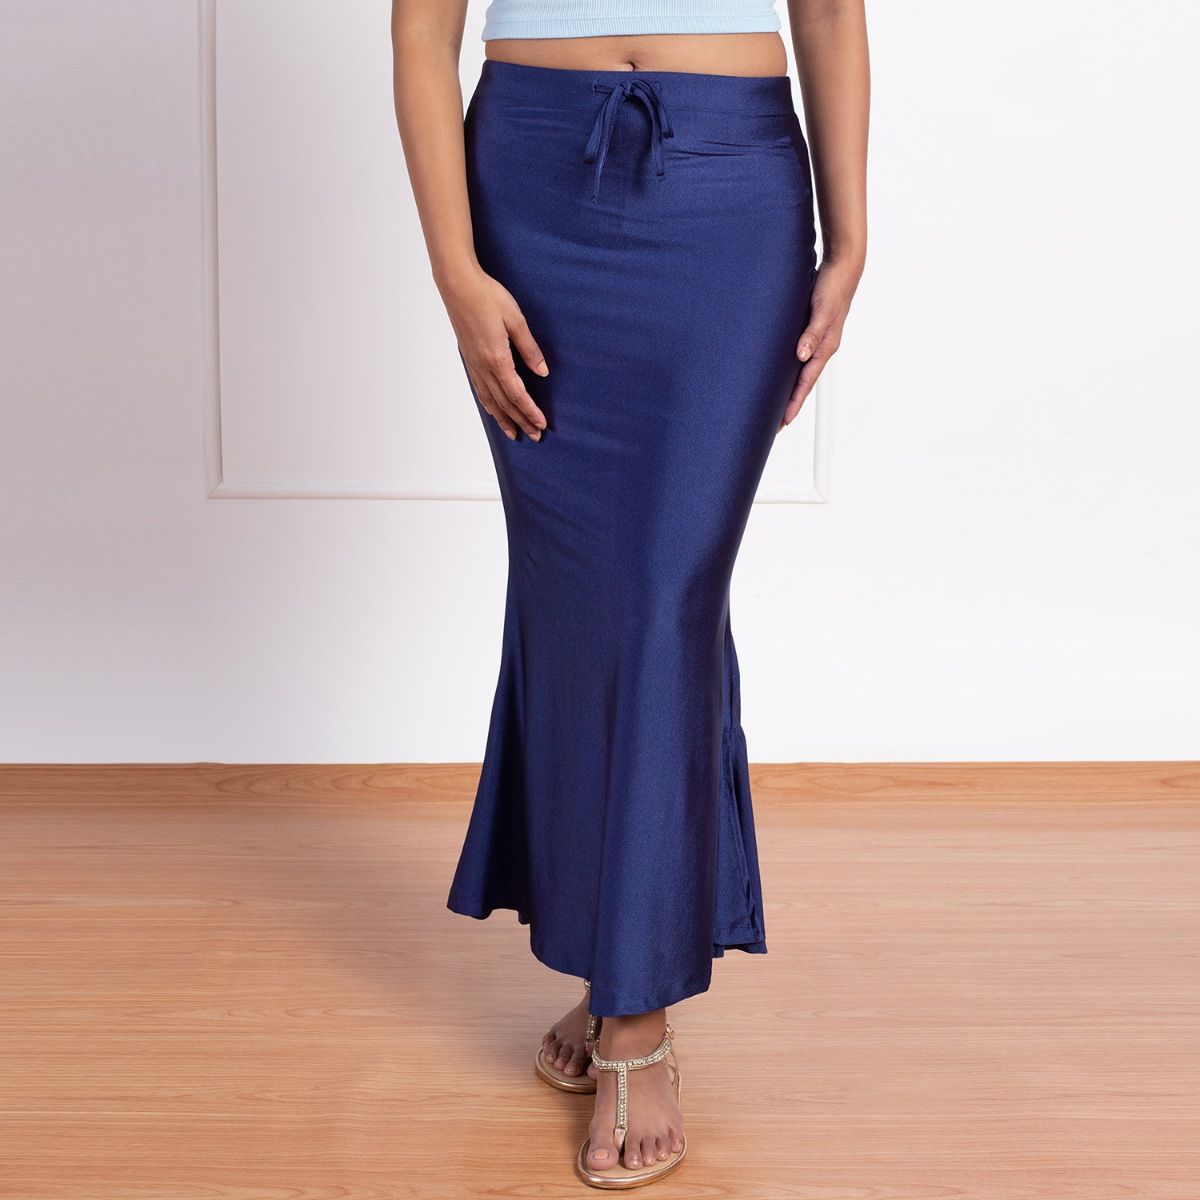 Buy Nykd by Nykaa NYOE01 Mermaid Saree Petticoat Green online